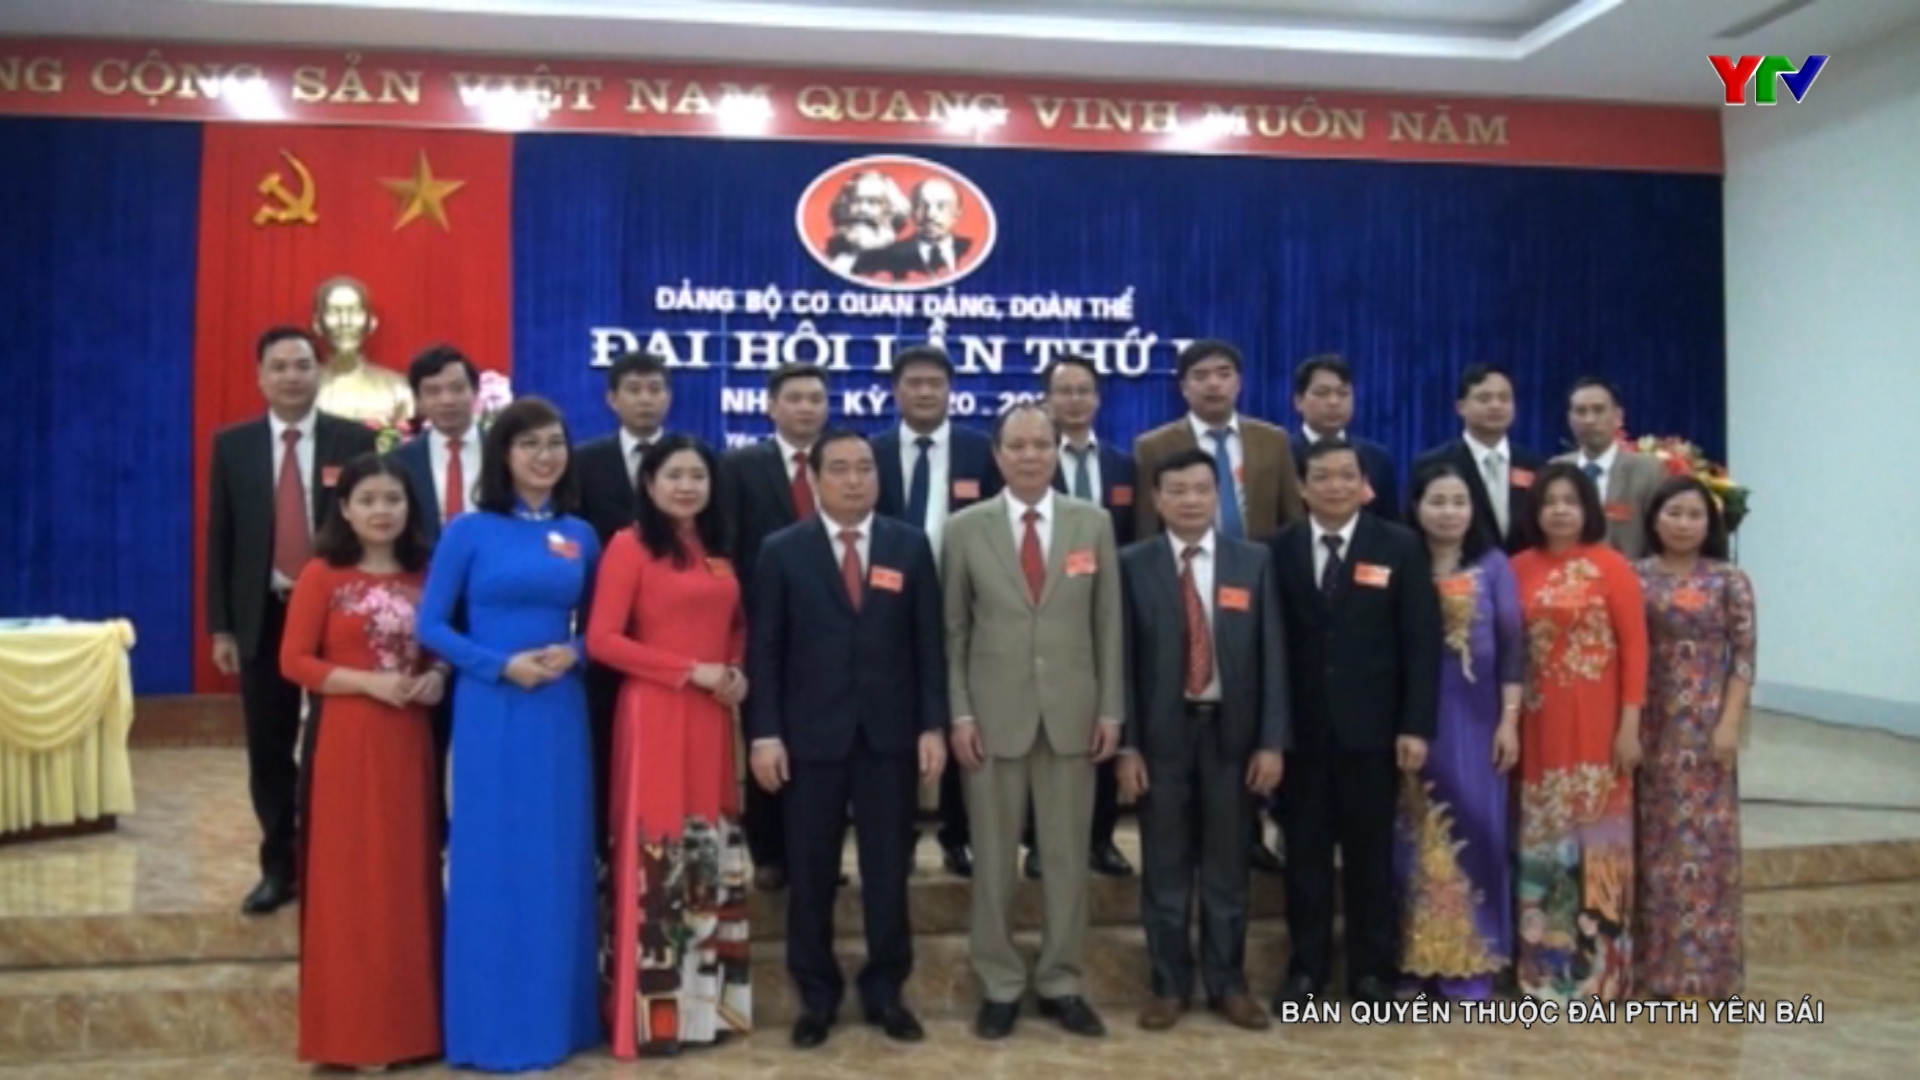 Đại hội Đảng bộ Cơ quan đảng, đoàn thể huyện Yên Bình nhiệm kỳ 2020-2025